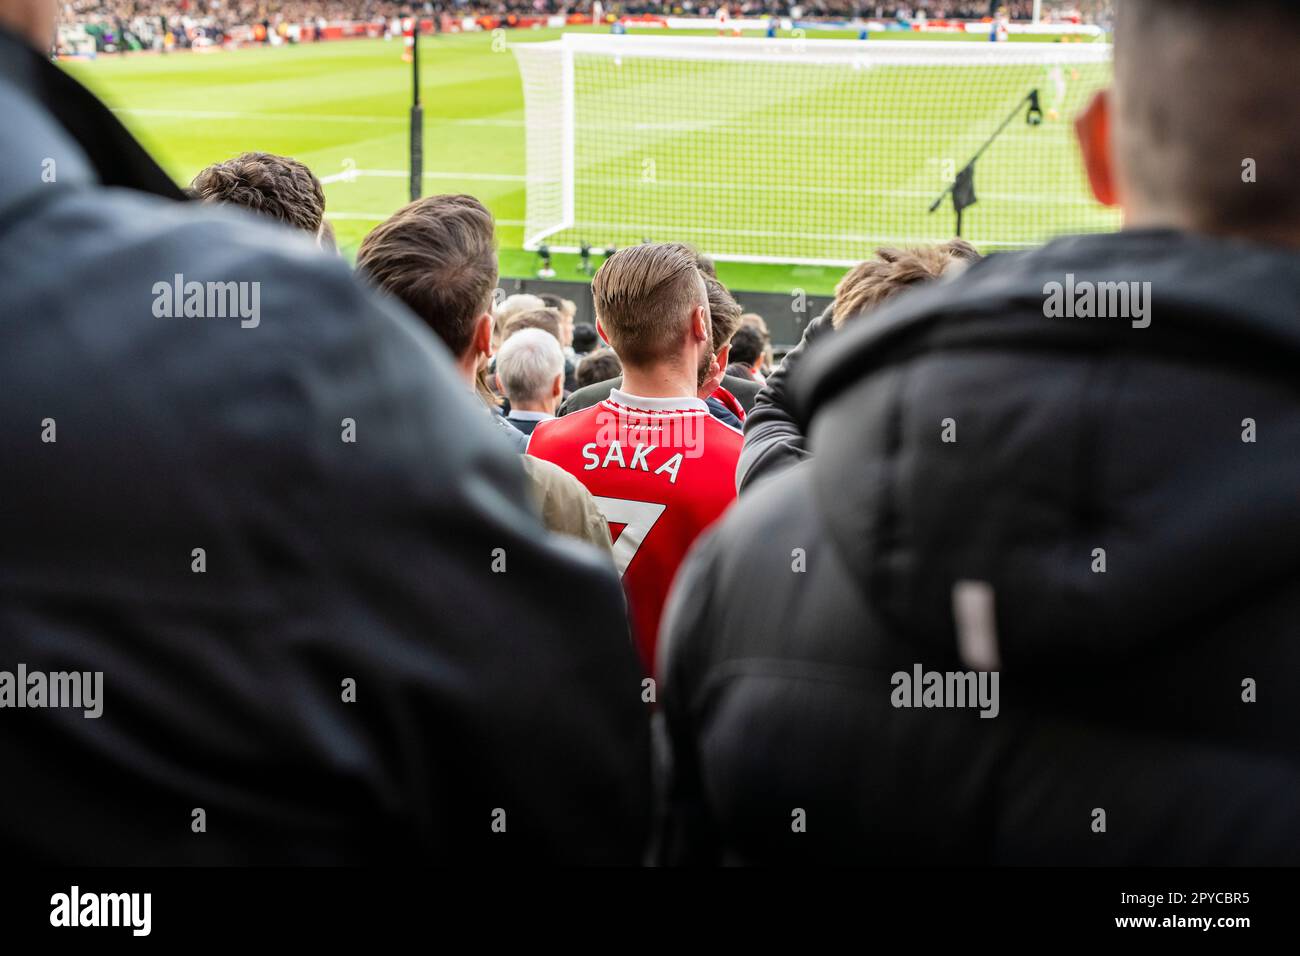 Giovane uomo in folla ad una partita di calcio con la maglia Saka, l'Arsenal Football Club, lo stadio Emirates di Londra Foto Stock